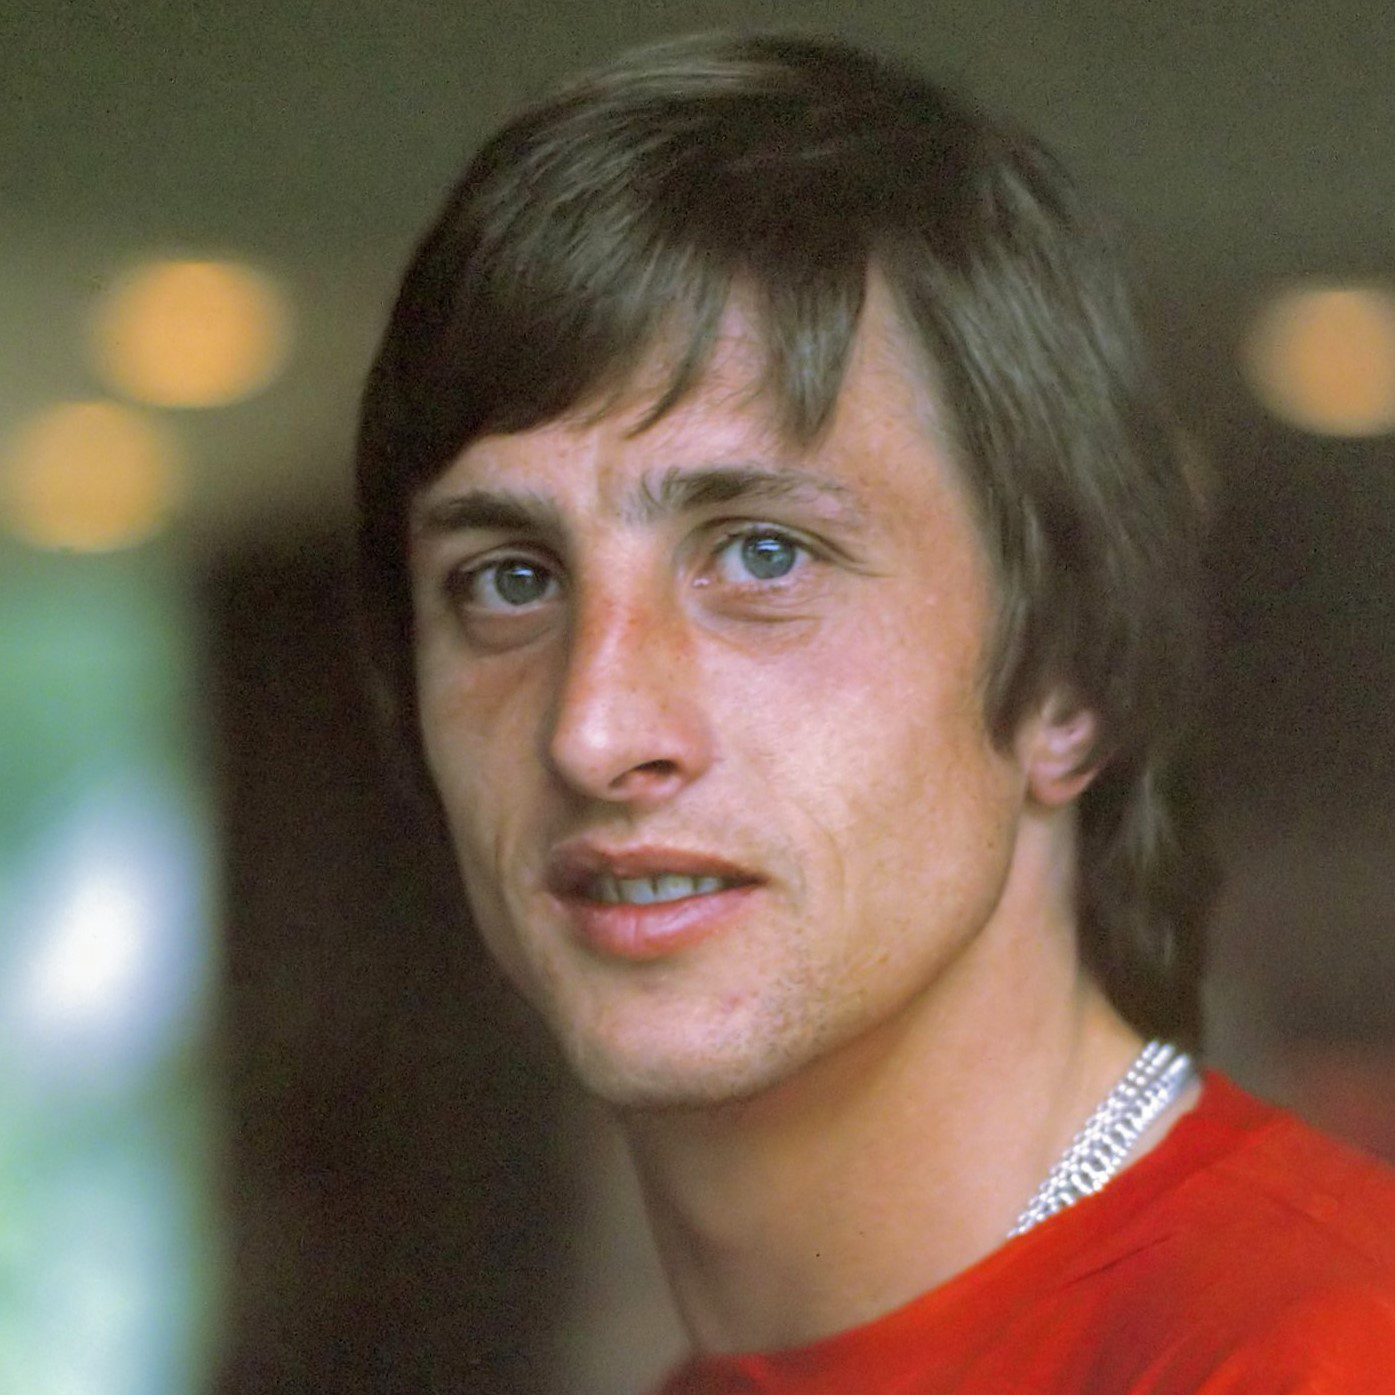 Johan Cruyff typ osobowości MBTI image